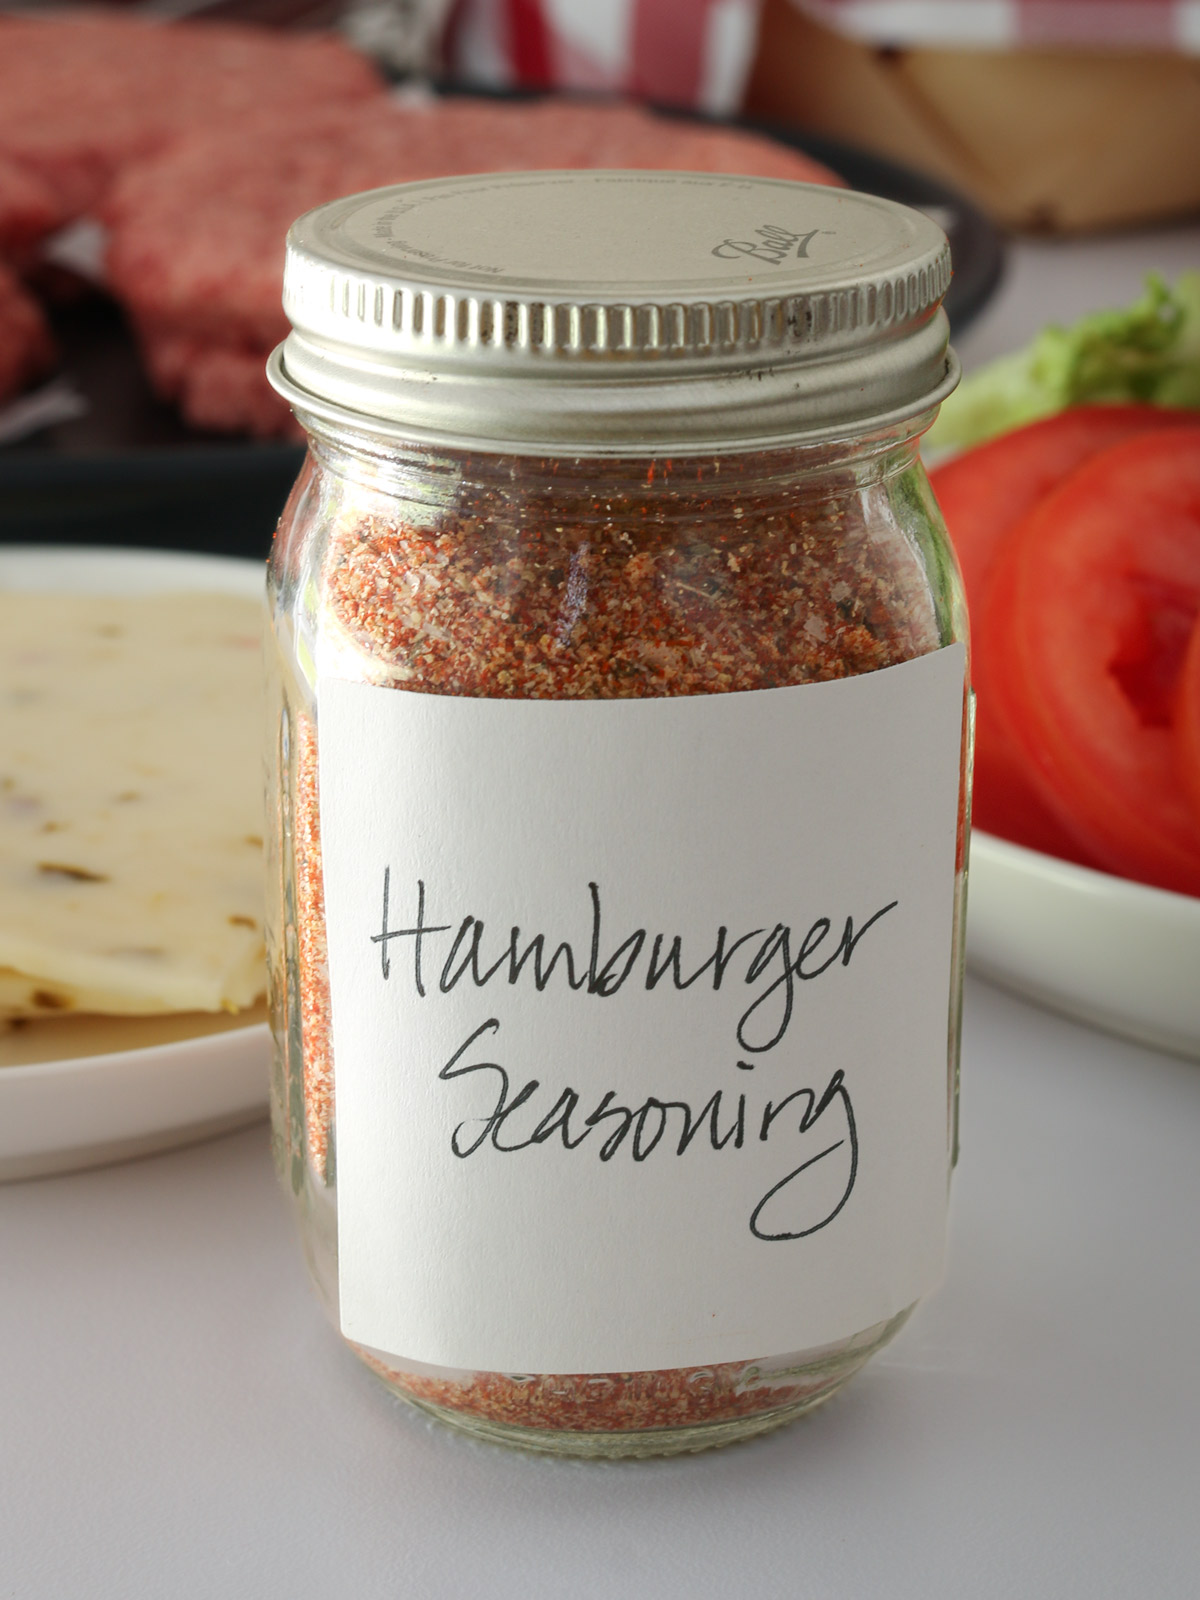 Buy Hamburger seasoning combi online at Natural Spices